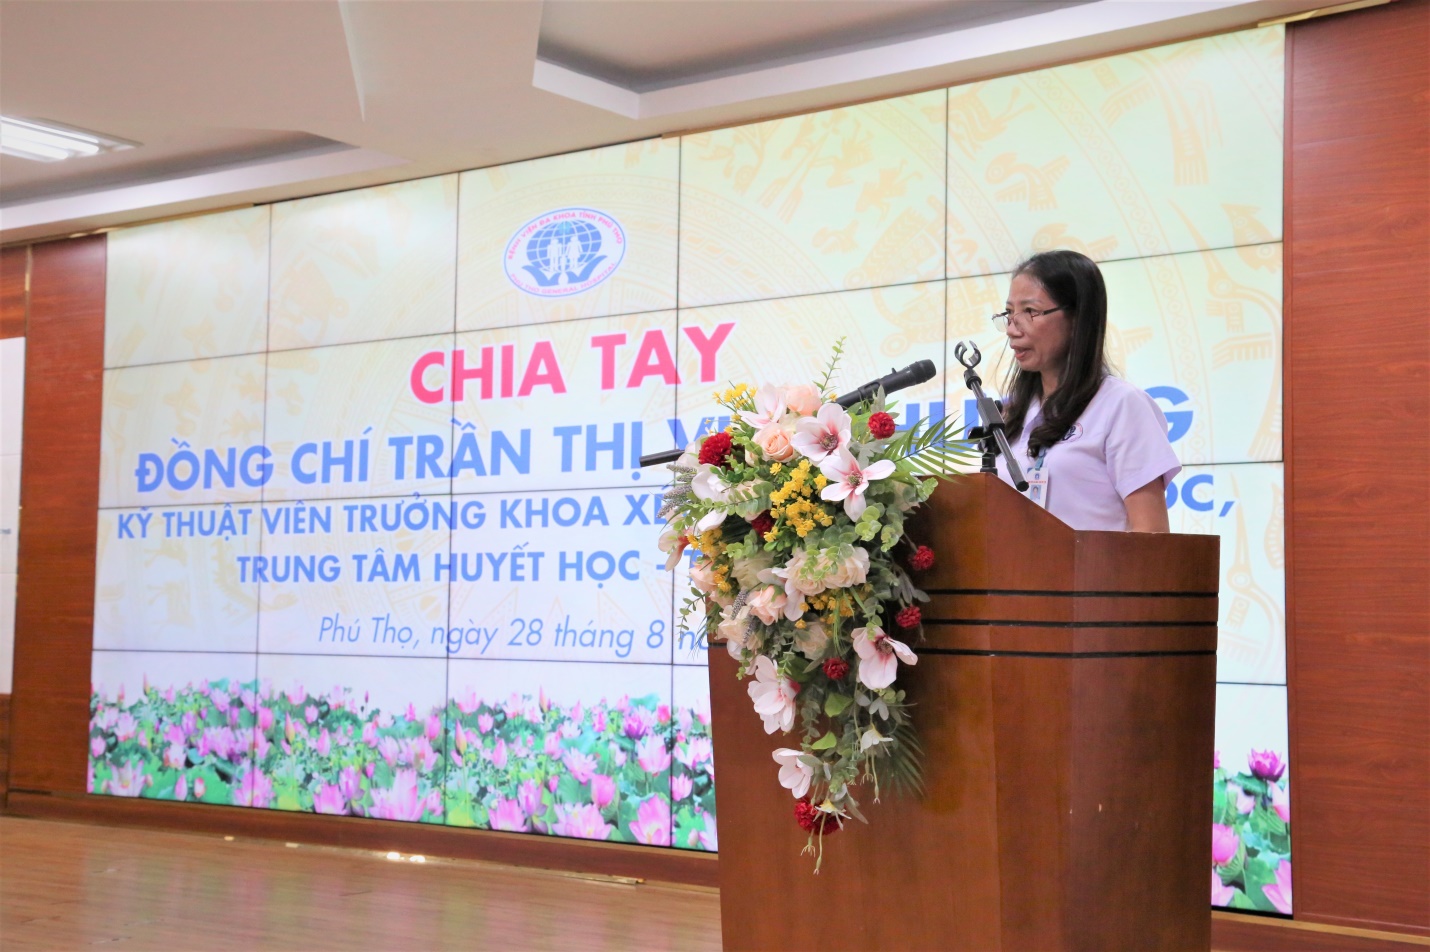 Đồng Chí Trần Thị Vịnh Hương phát biểu cảm ơn tại buổi gặp mặt